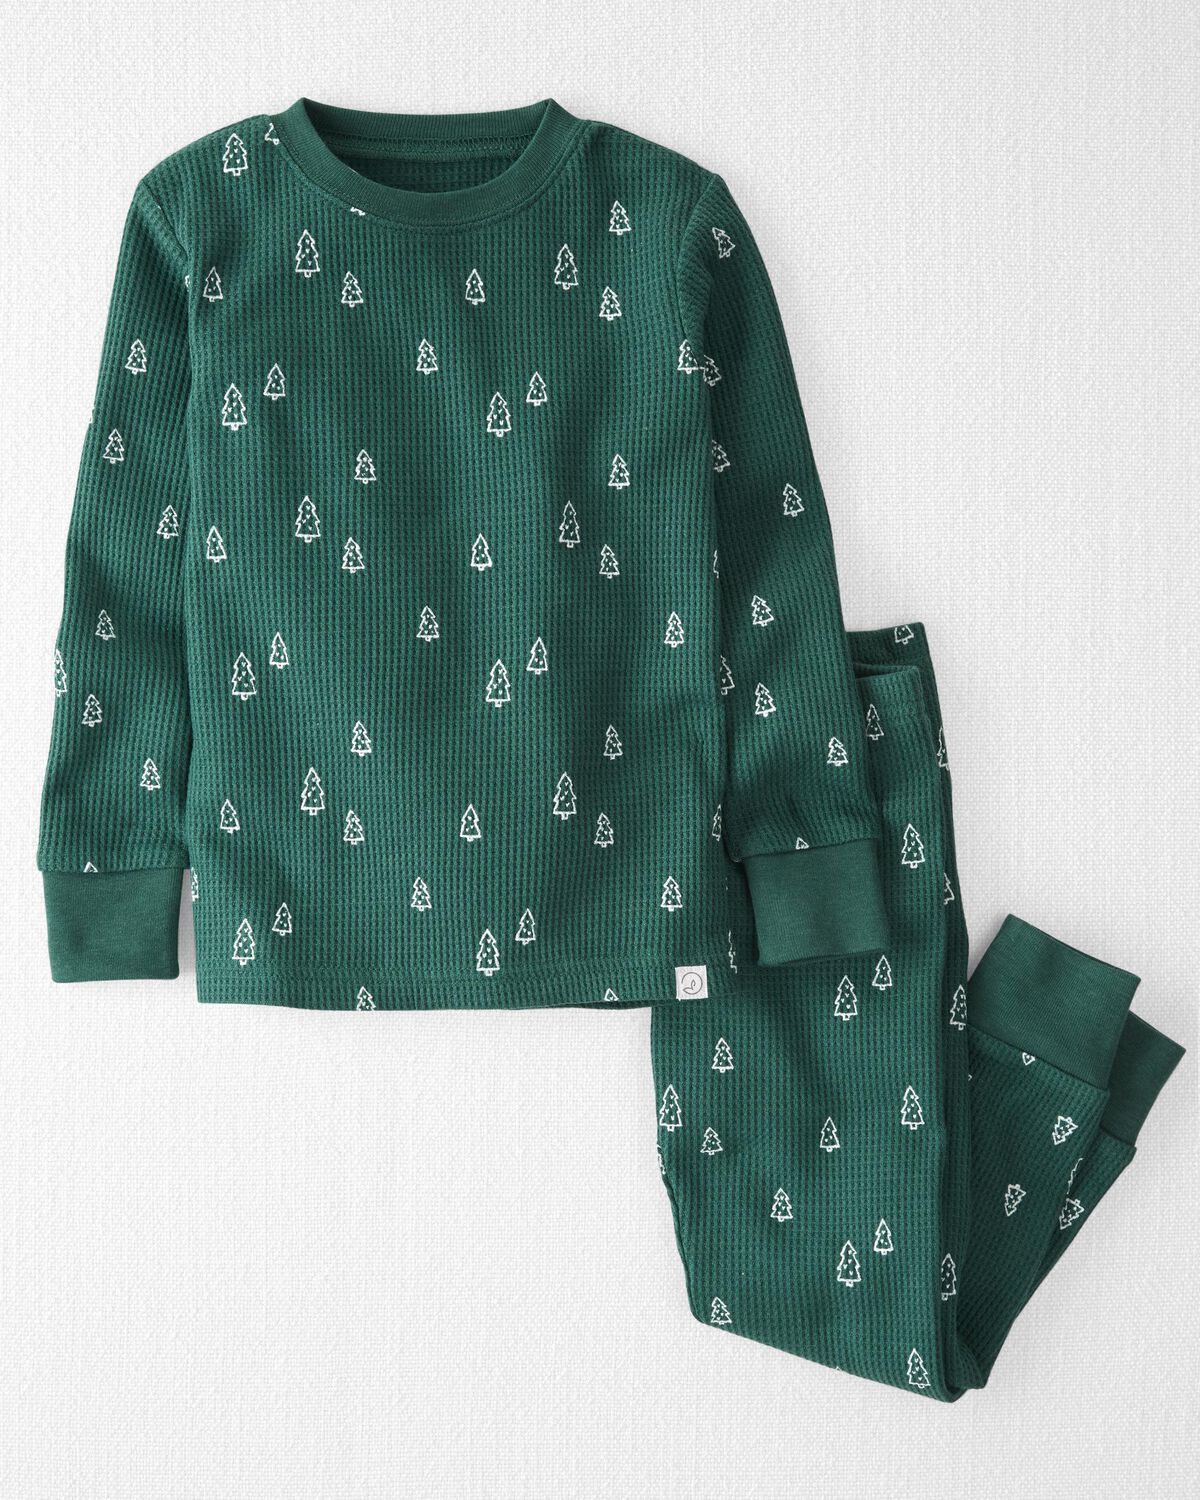 Tree Print Toddler Waffle Knit Pajamas Set Made With Organic Cotton | carters.com | Carter's